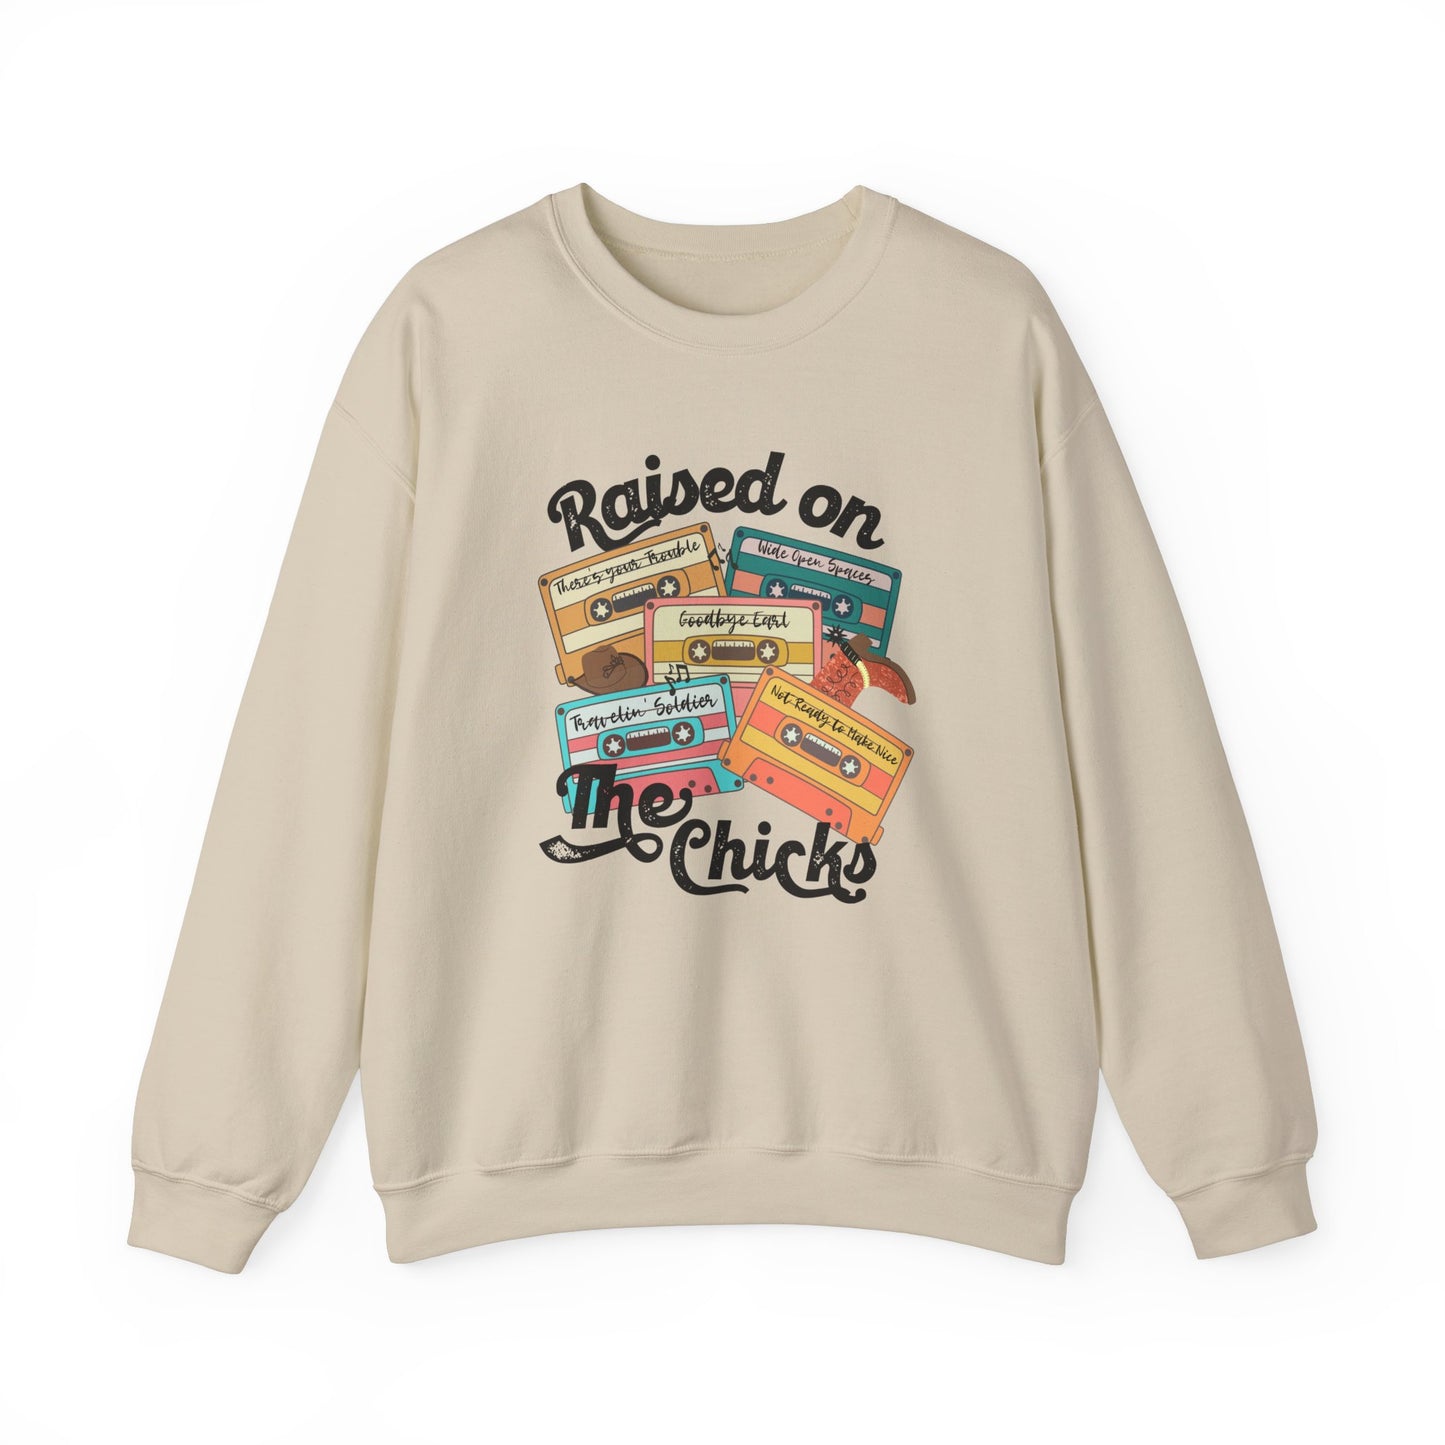 Raised on the Chicks Crewneck Sweatshirt